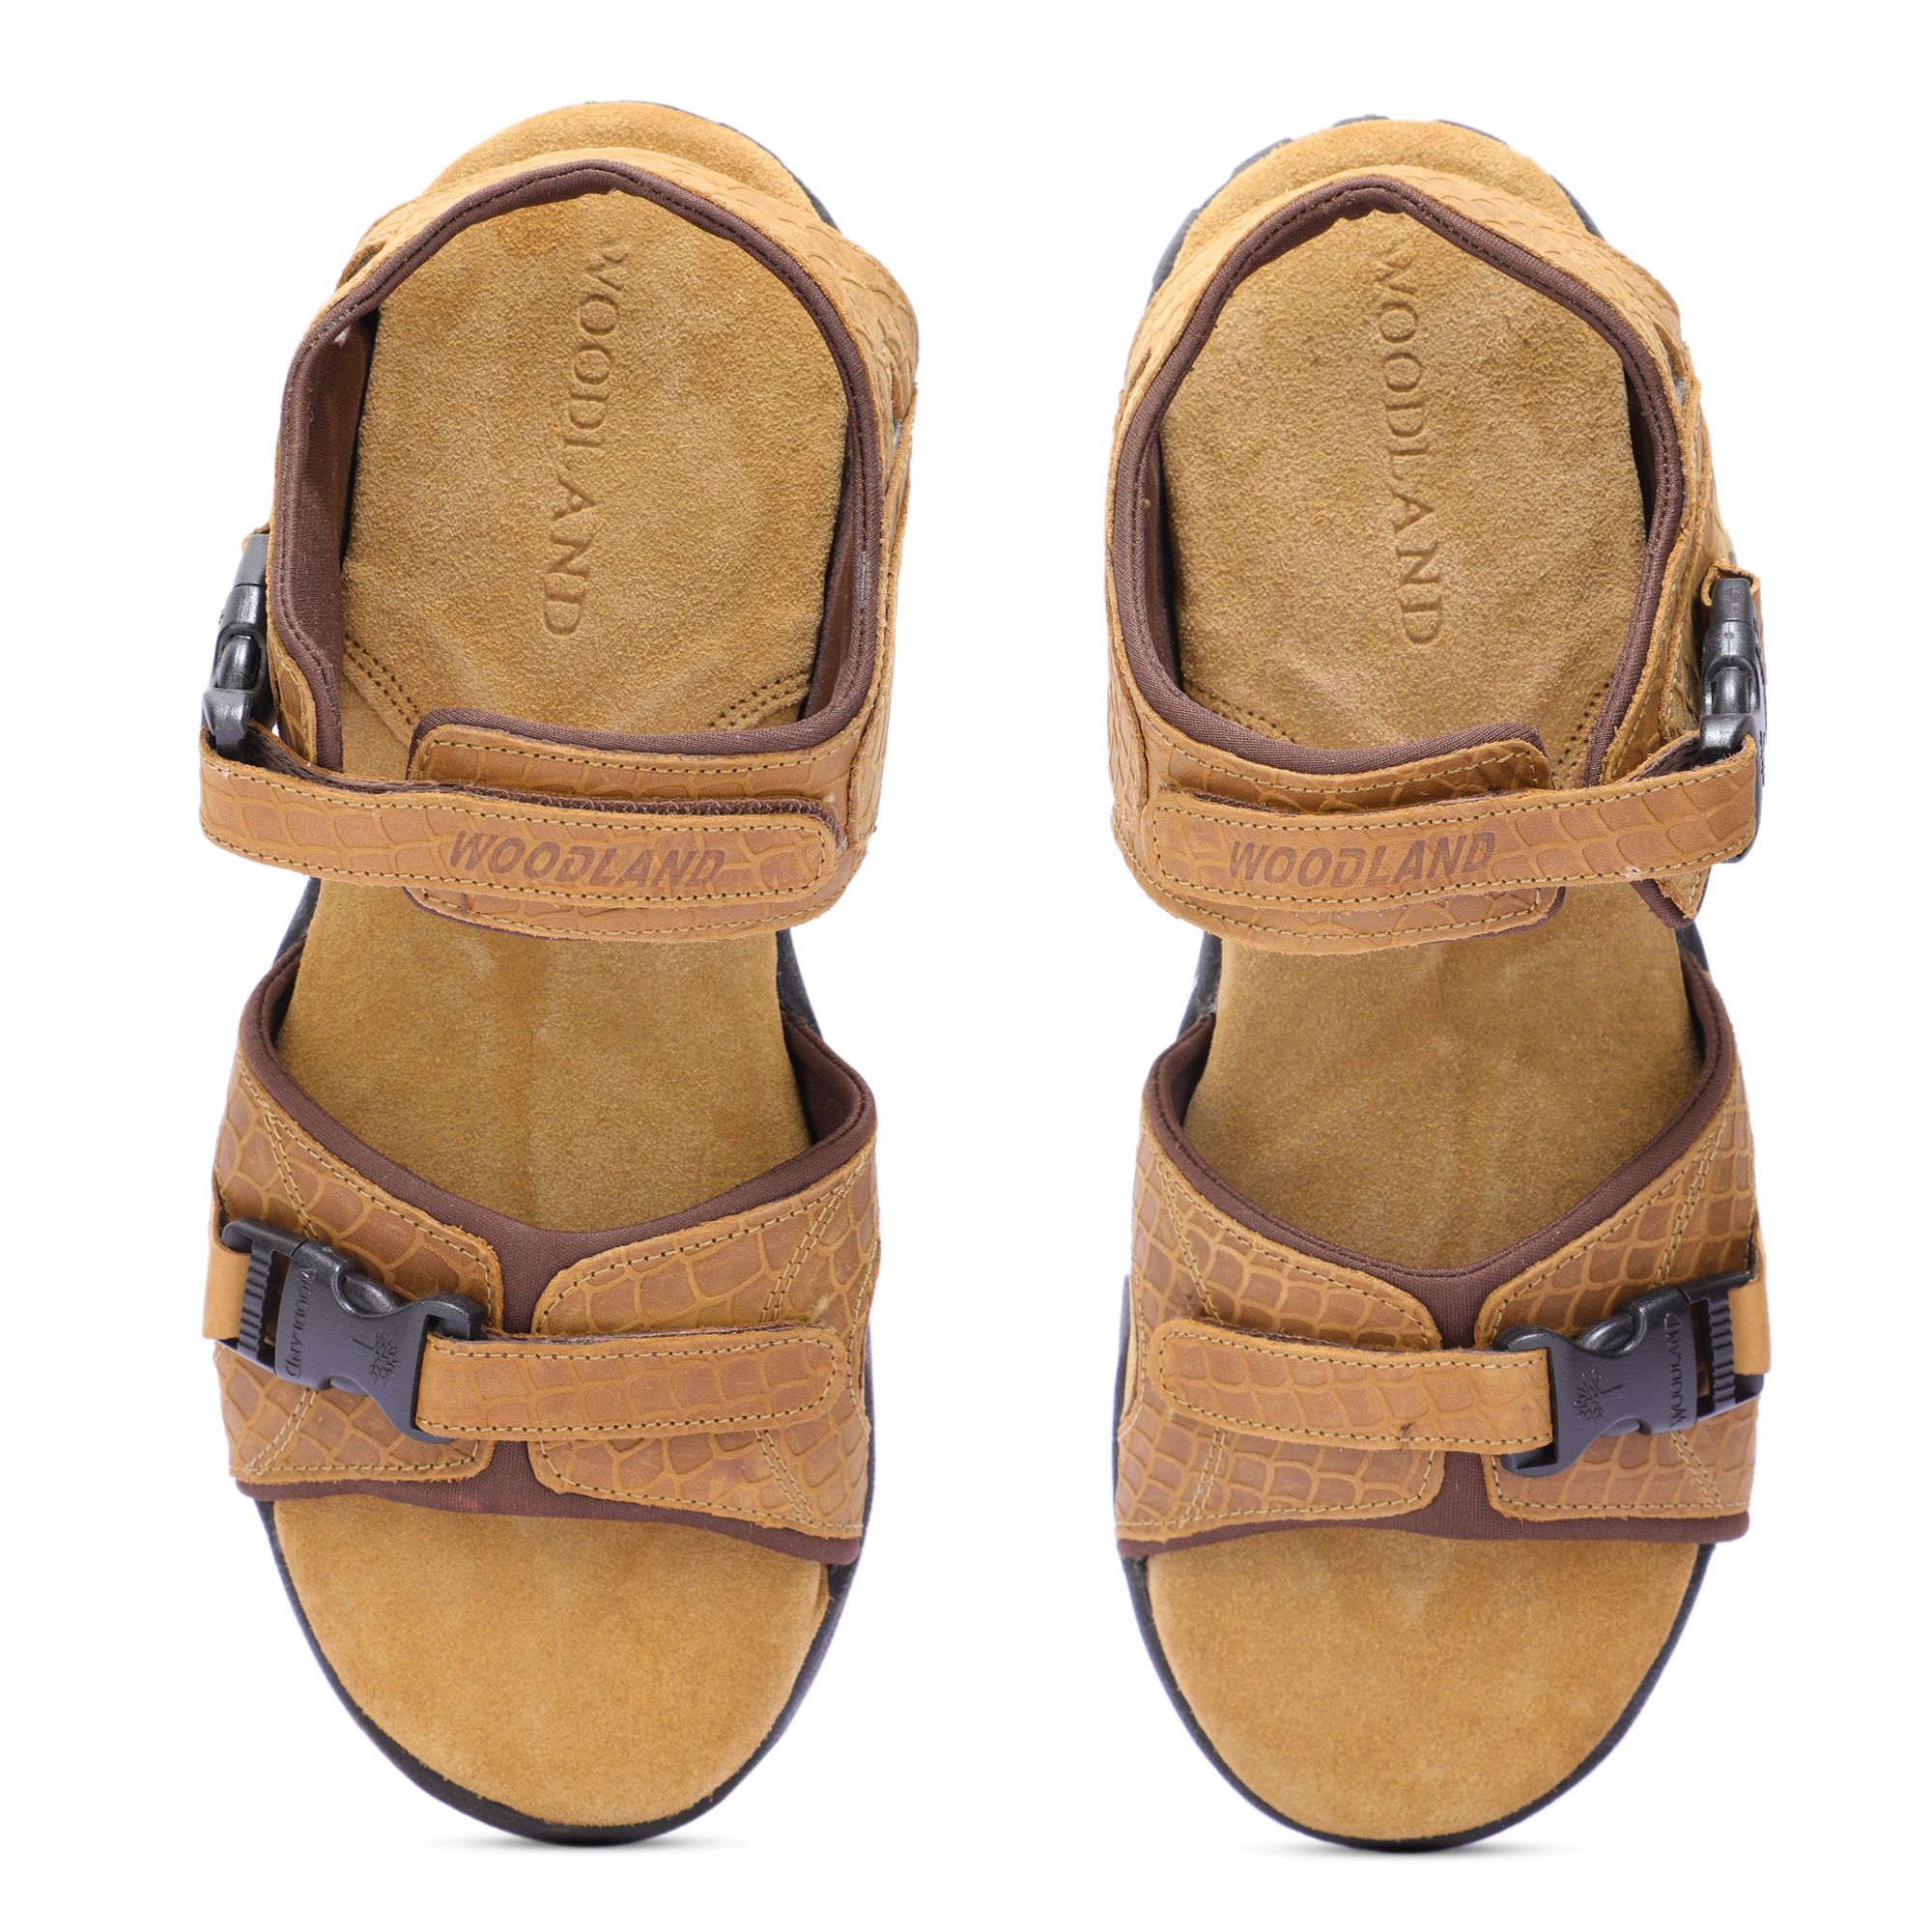 Woodland Men's Camel Leather Sandal-6 UK (40 EU) (GD 3455119NW) :  Amazon.in: Fashion